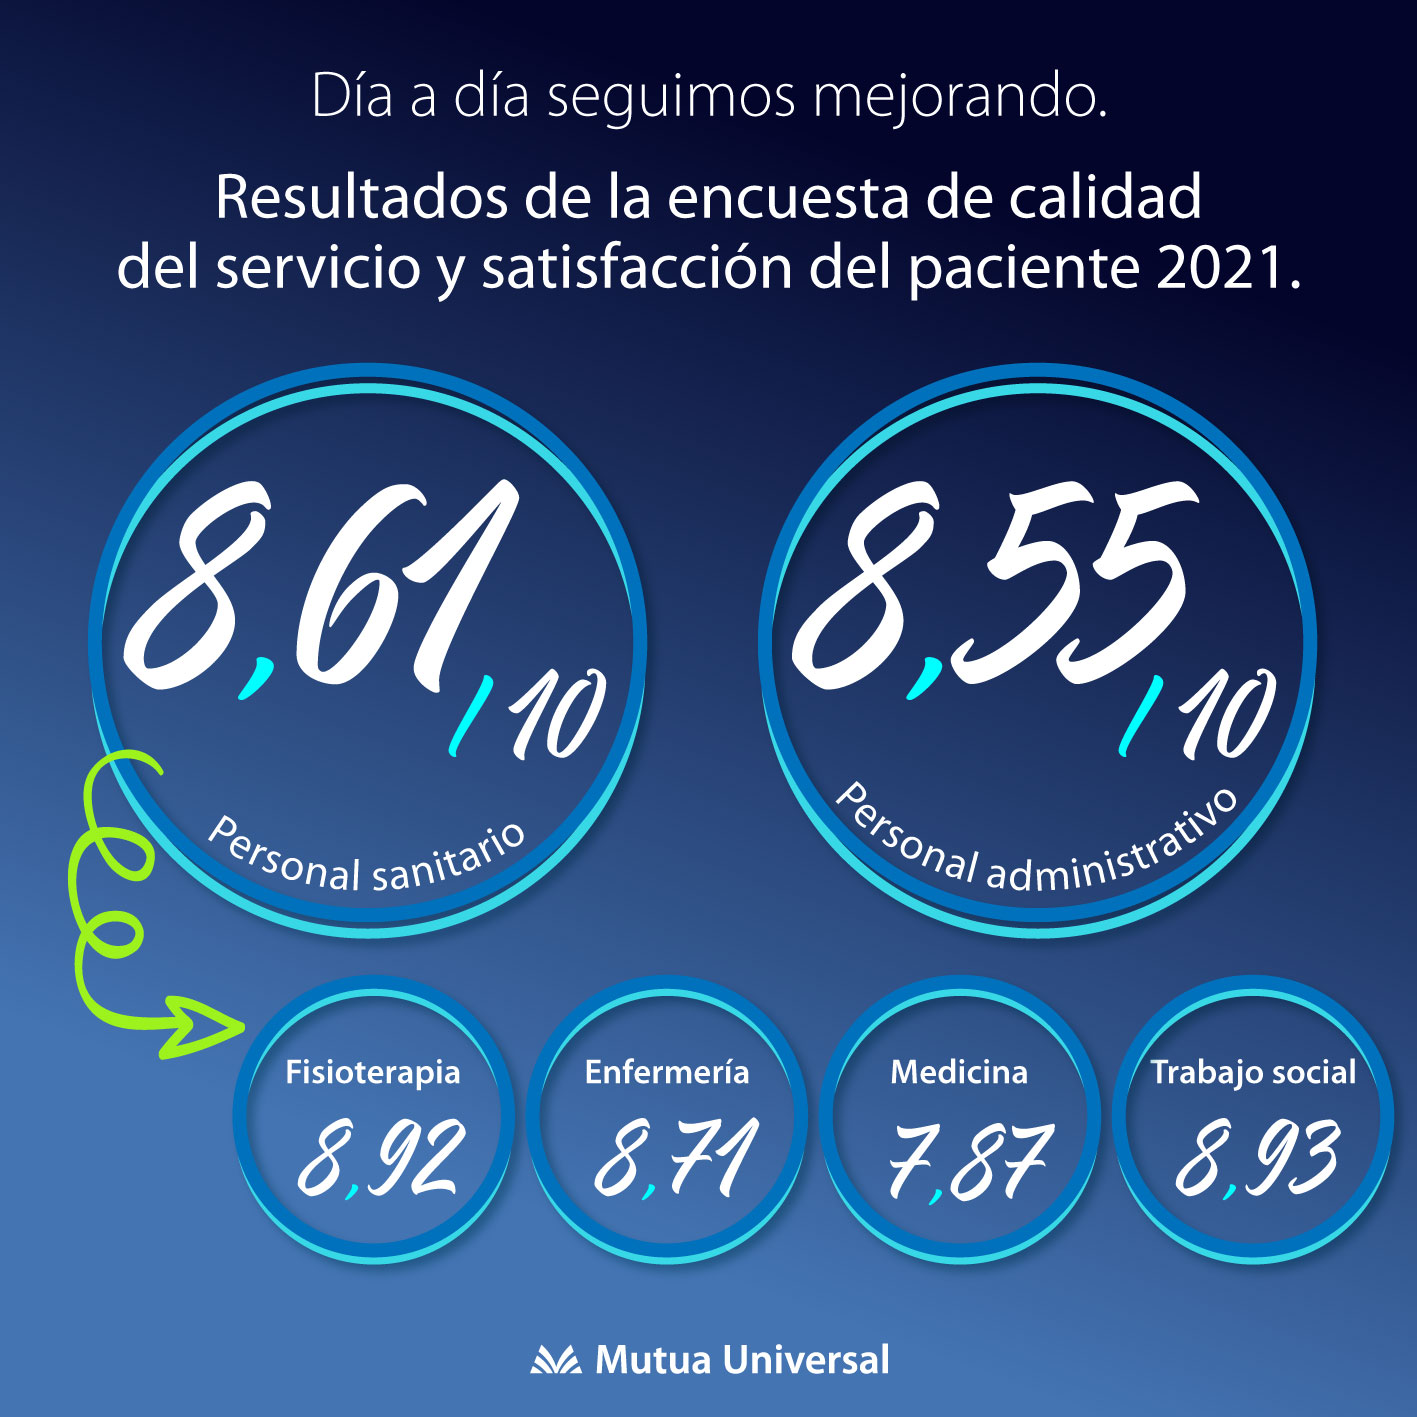 Nuestro personal sanitario obtiene un 8,61 en la Encuesta de Satisfacción Paciente 2021